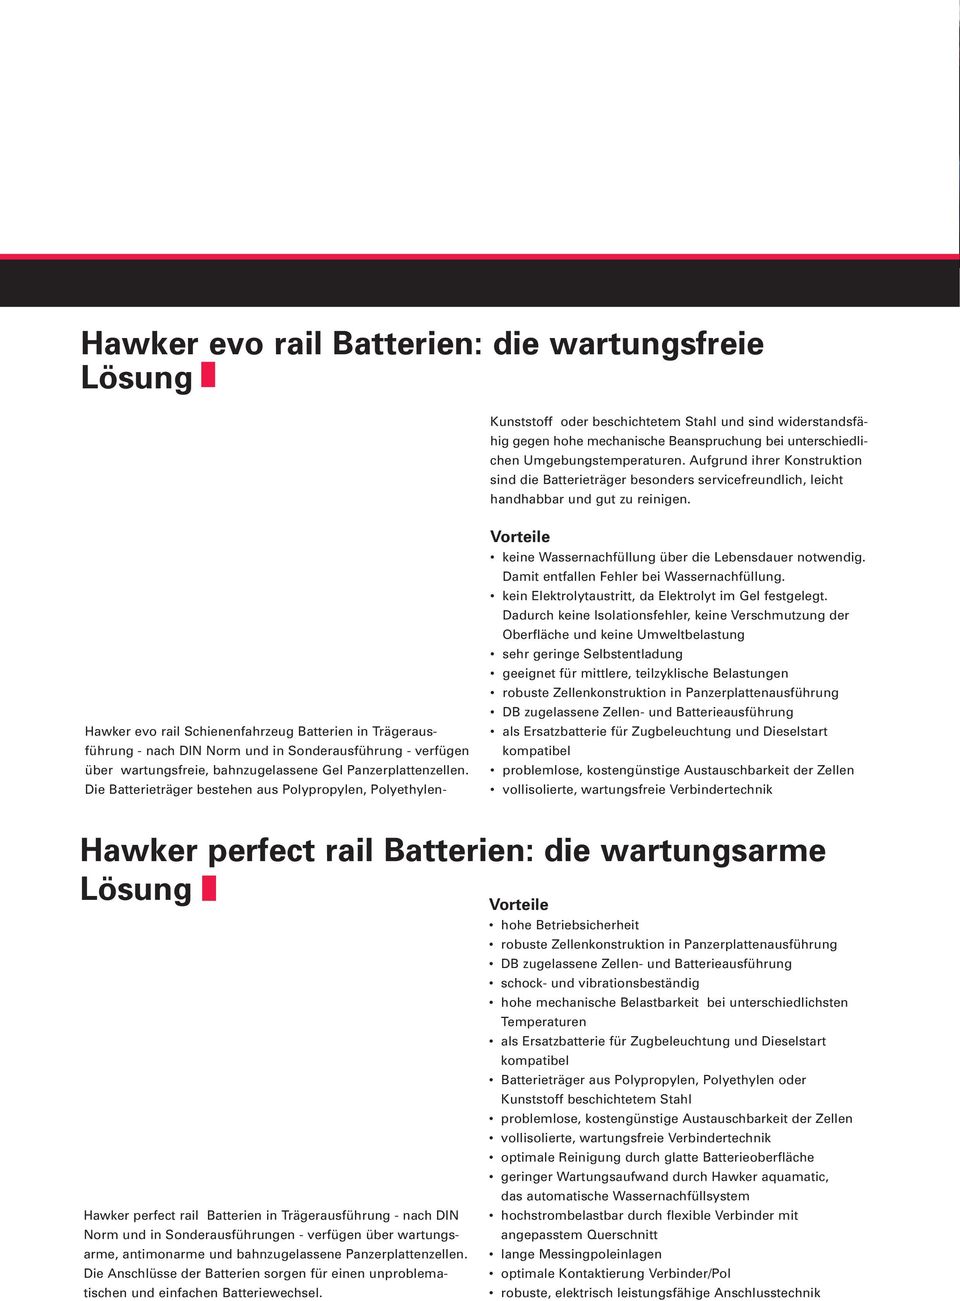 Hawker evo rail Schienenfahrzeug Batterien in Trägeraus - führung - nach DIN Norm und in Sonderausführung - verfügen über wartungsfreie, bahnzugelassene Gel Panzerplattenzellen.